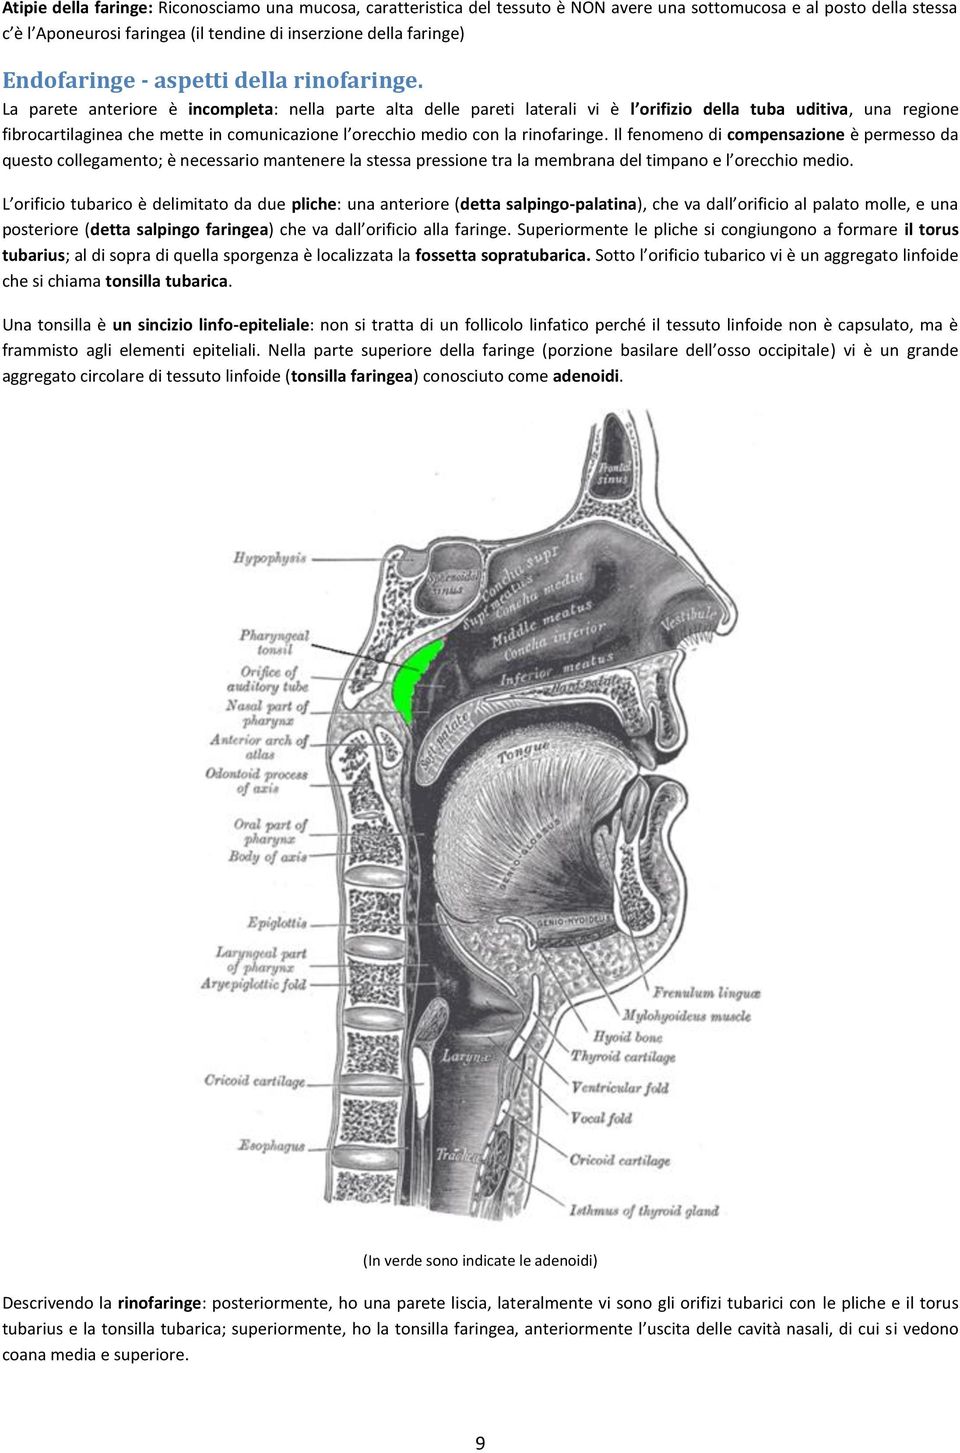 La parete anteriore è incompleta: nella parte alta delle pareti laterali vi è l orifizio della tuba uditiva, una regione fibrocartilaginea che mette in comunicazione l orecchio medio con la